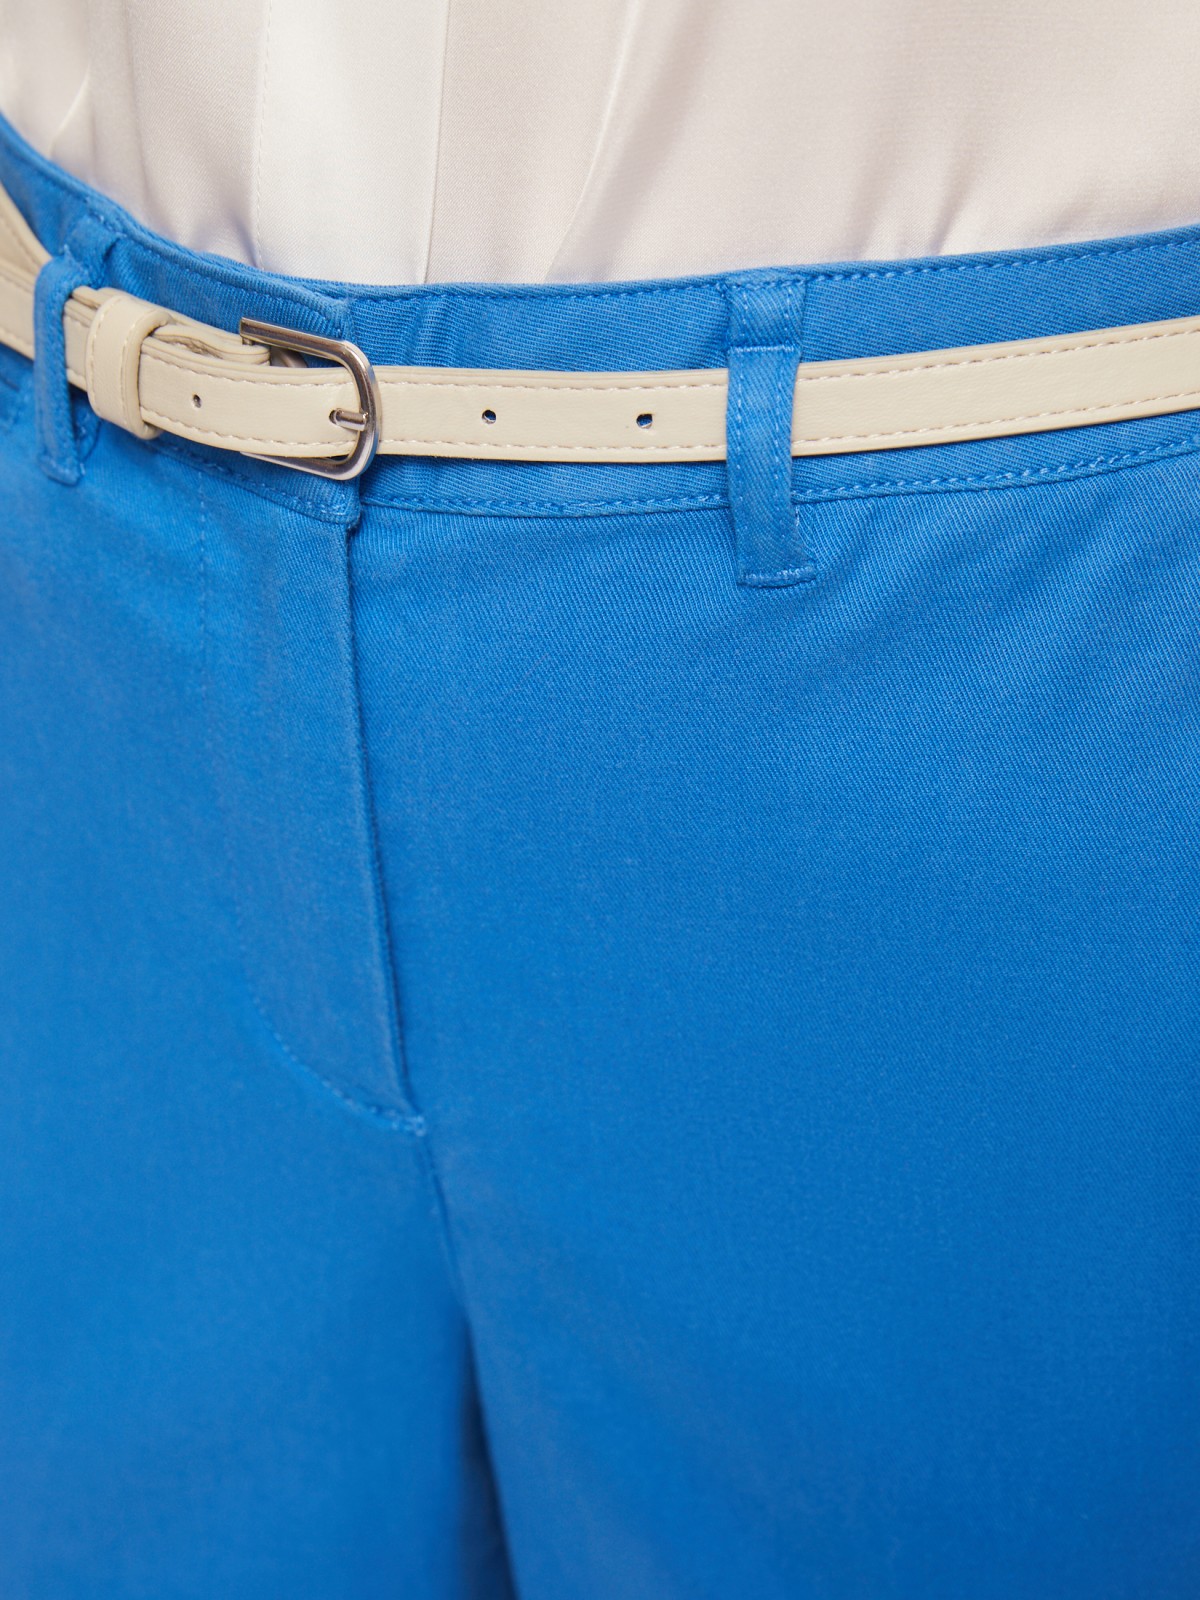 Офисные брюки-чинос со стрелками и ремнём zolla 02422736F043, цвет голубой, размер S - фото 4